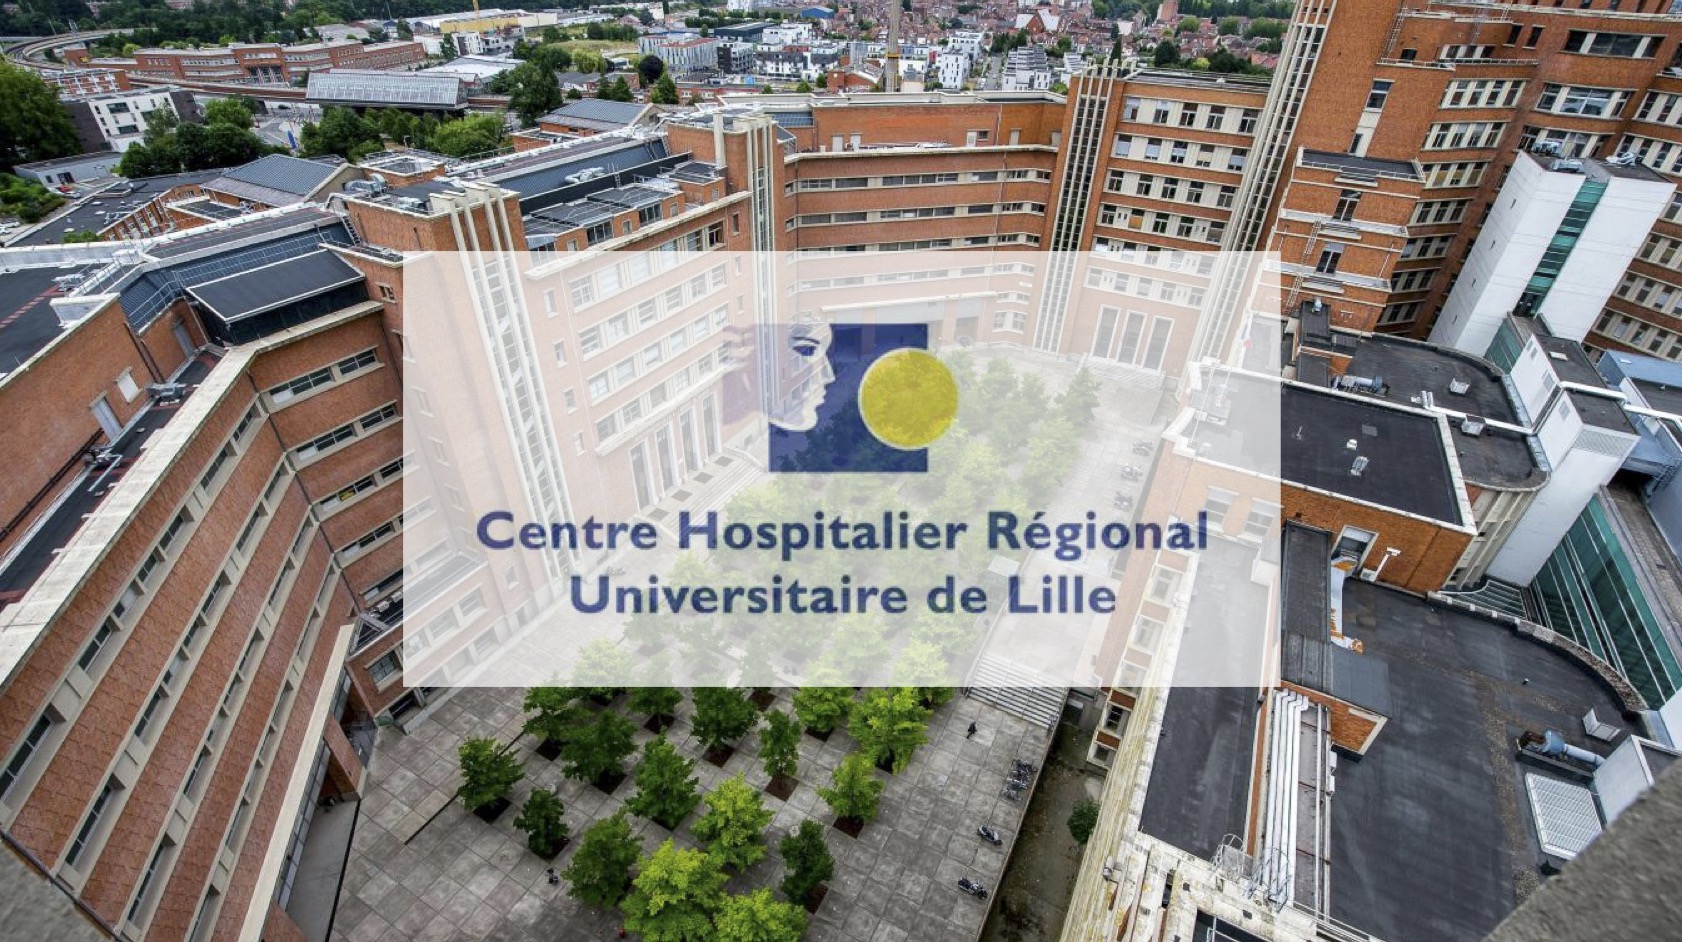 El Hospital Universitario de Lille utiliza una tecnología ultrainnovadora: el secuenciador de muy alta velocidad.